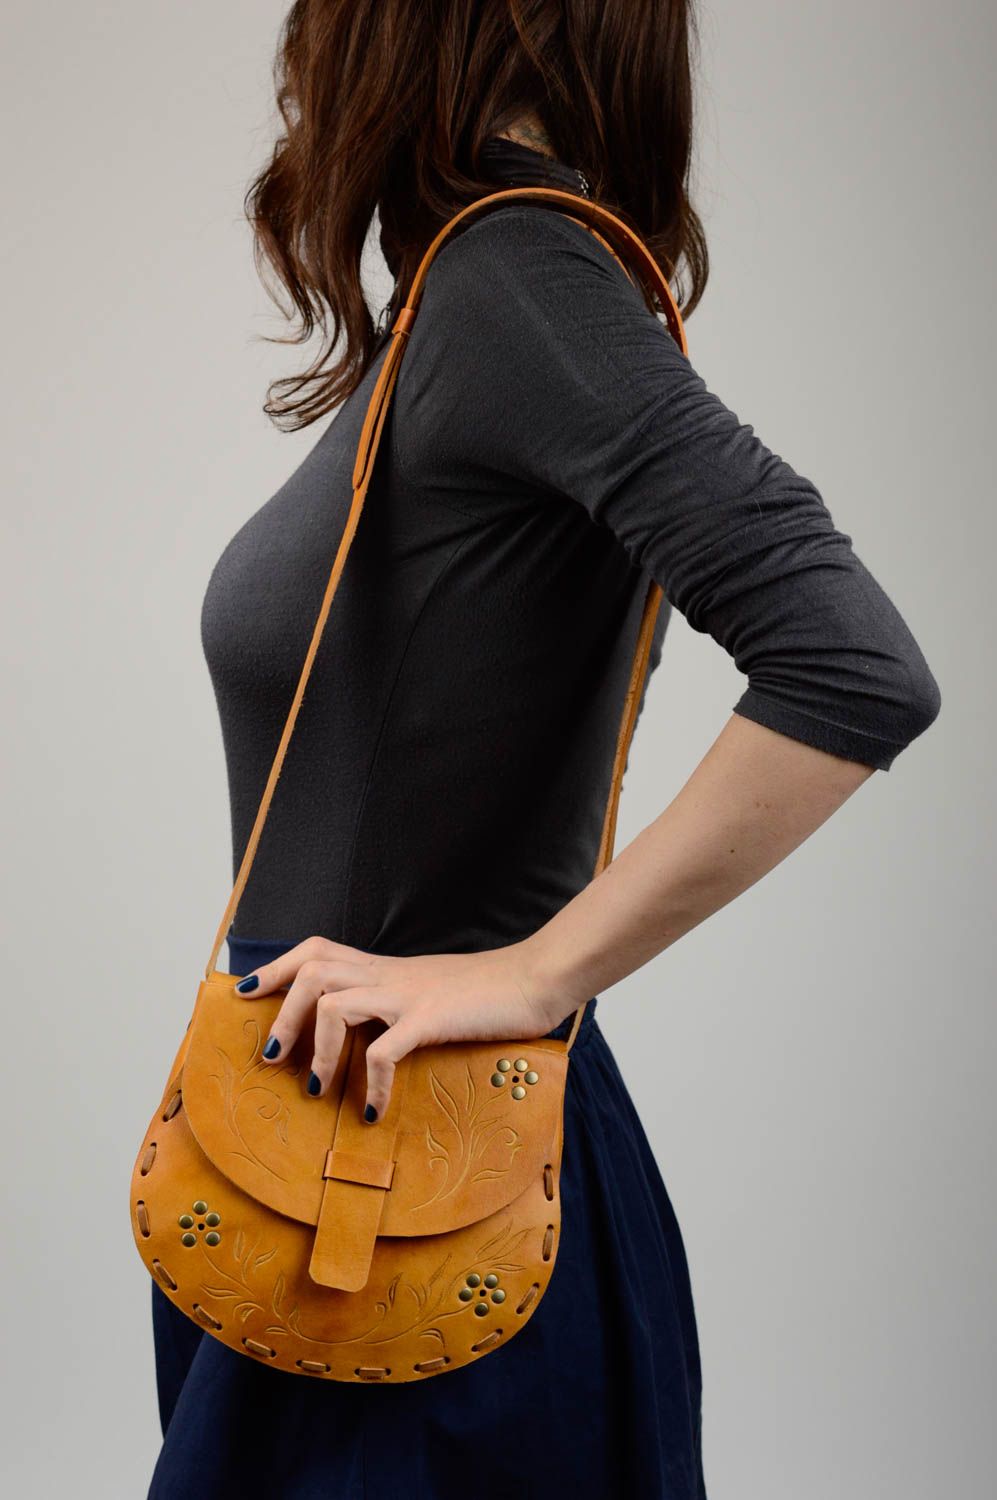 Damentasche Leder handgefertigt Damen Umhängetasche stilvolles Mode Accessoire foto 2